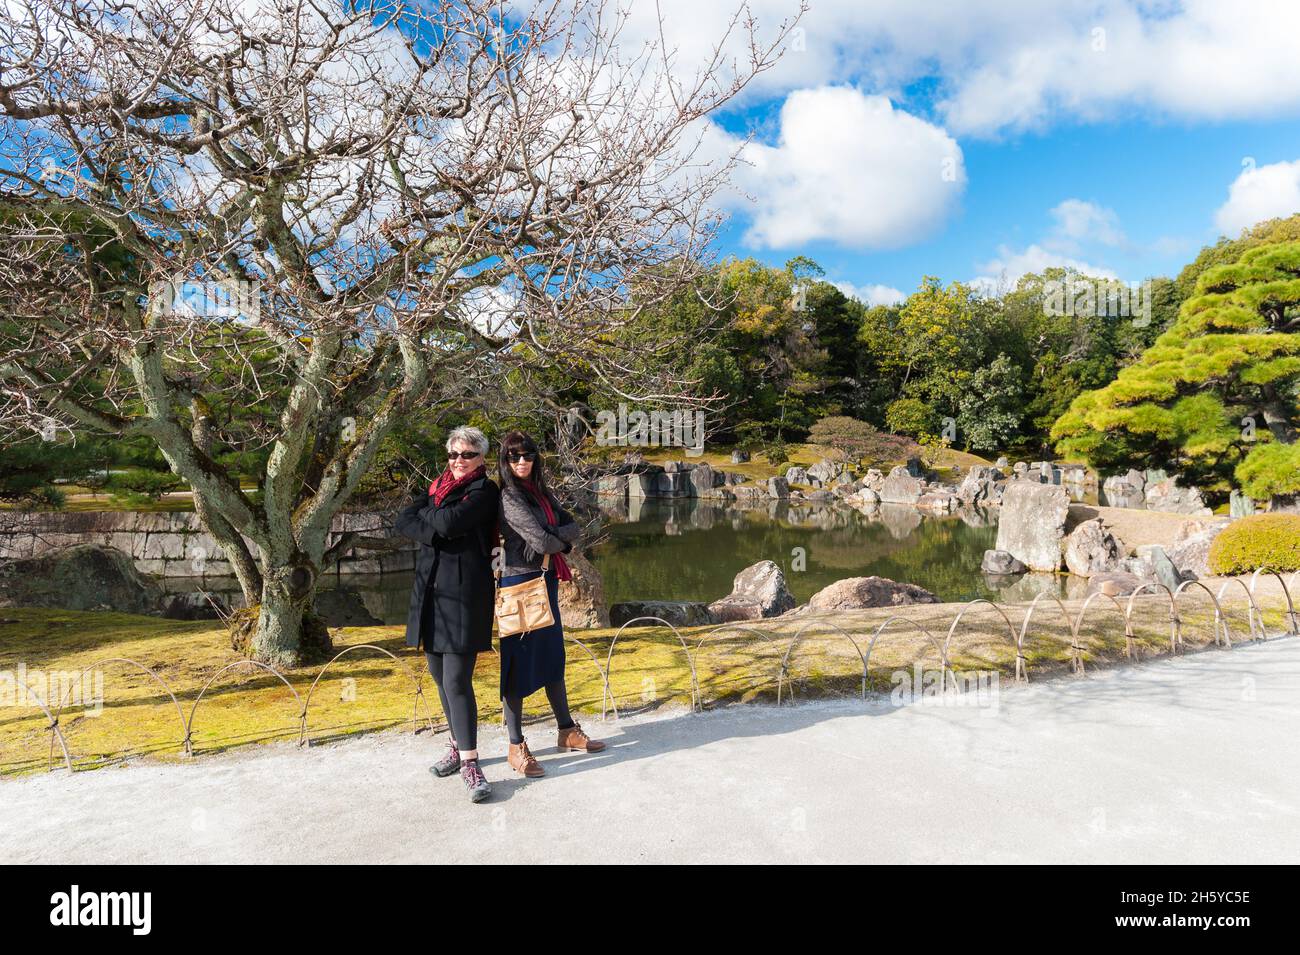 Zwei weibliche Touristen, die sich auf dem Weg, der an einem der wunderschönen, architektonisch gestalteten Gärten des Nijo Castle, Kyoto, Japan, vorbeiführt, zurück in die Vergangenheit stellen. Stockfoto